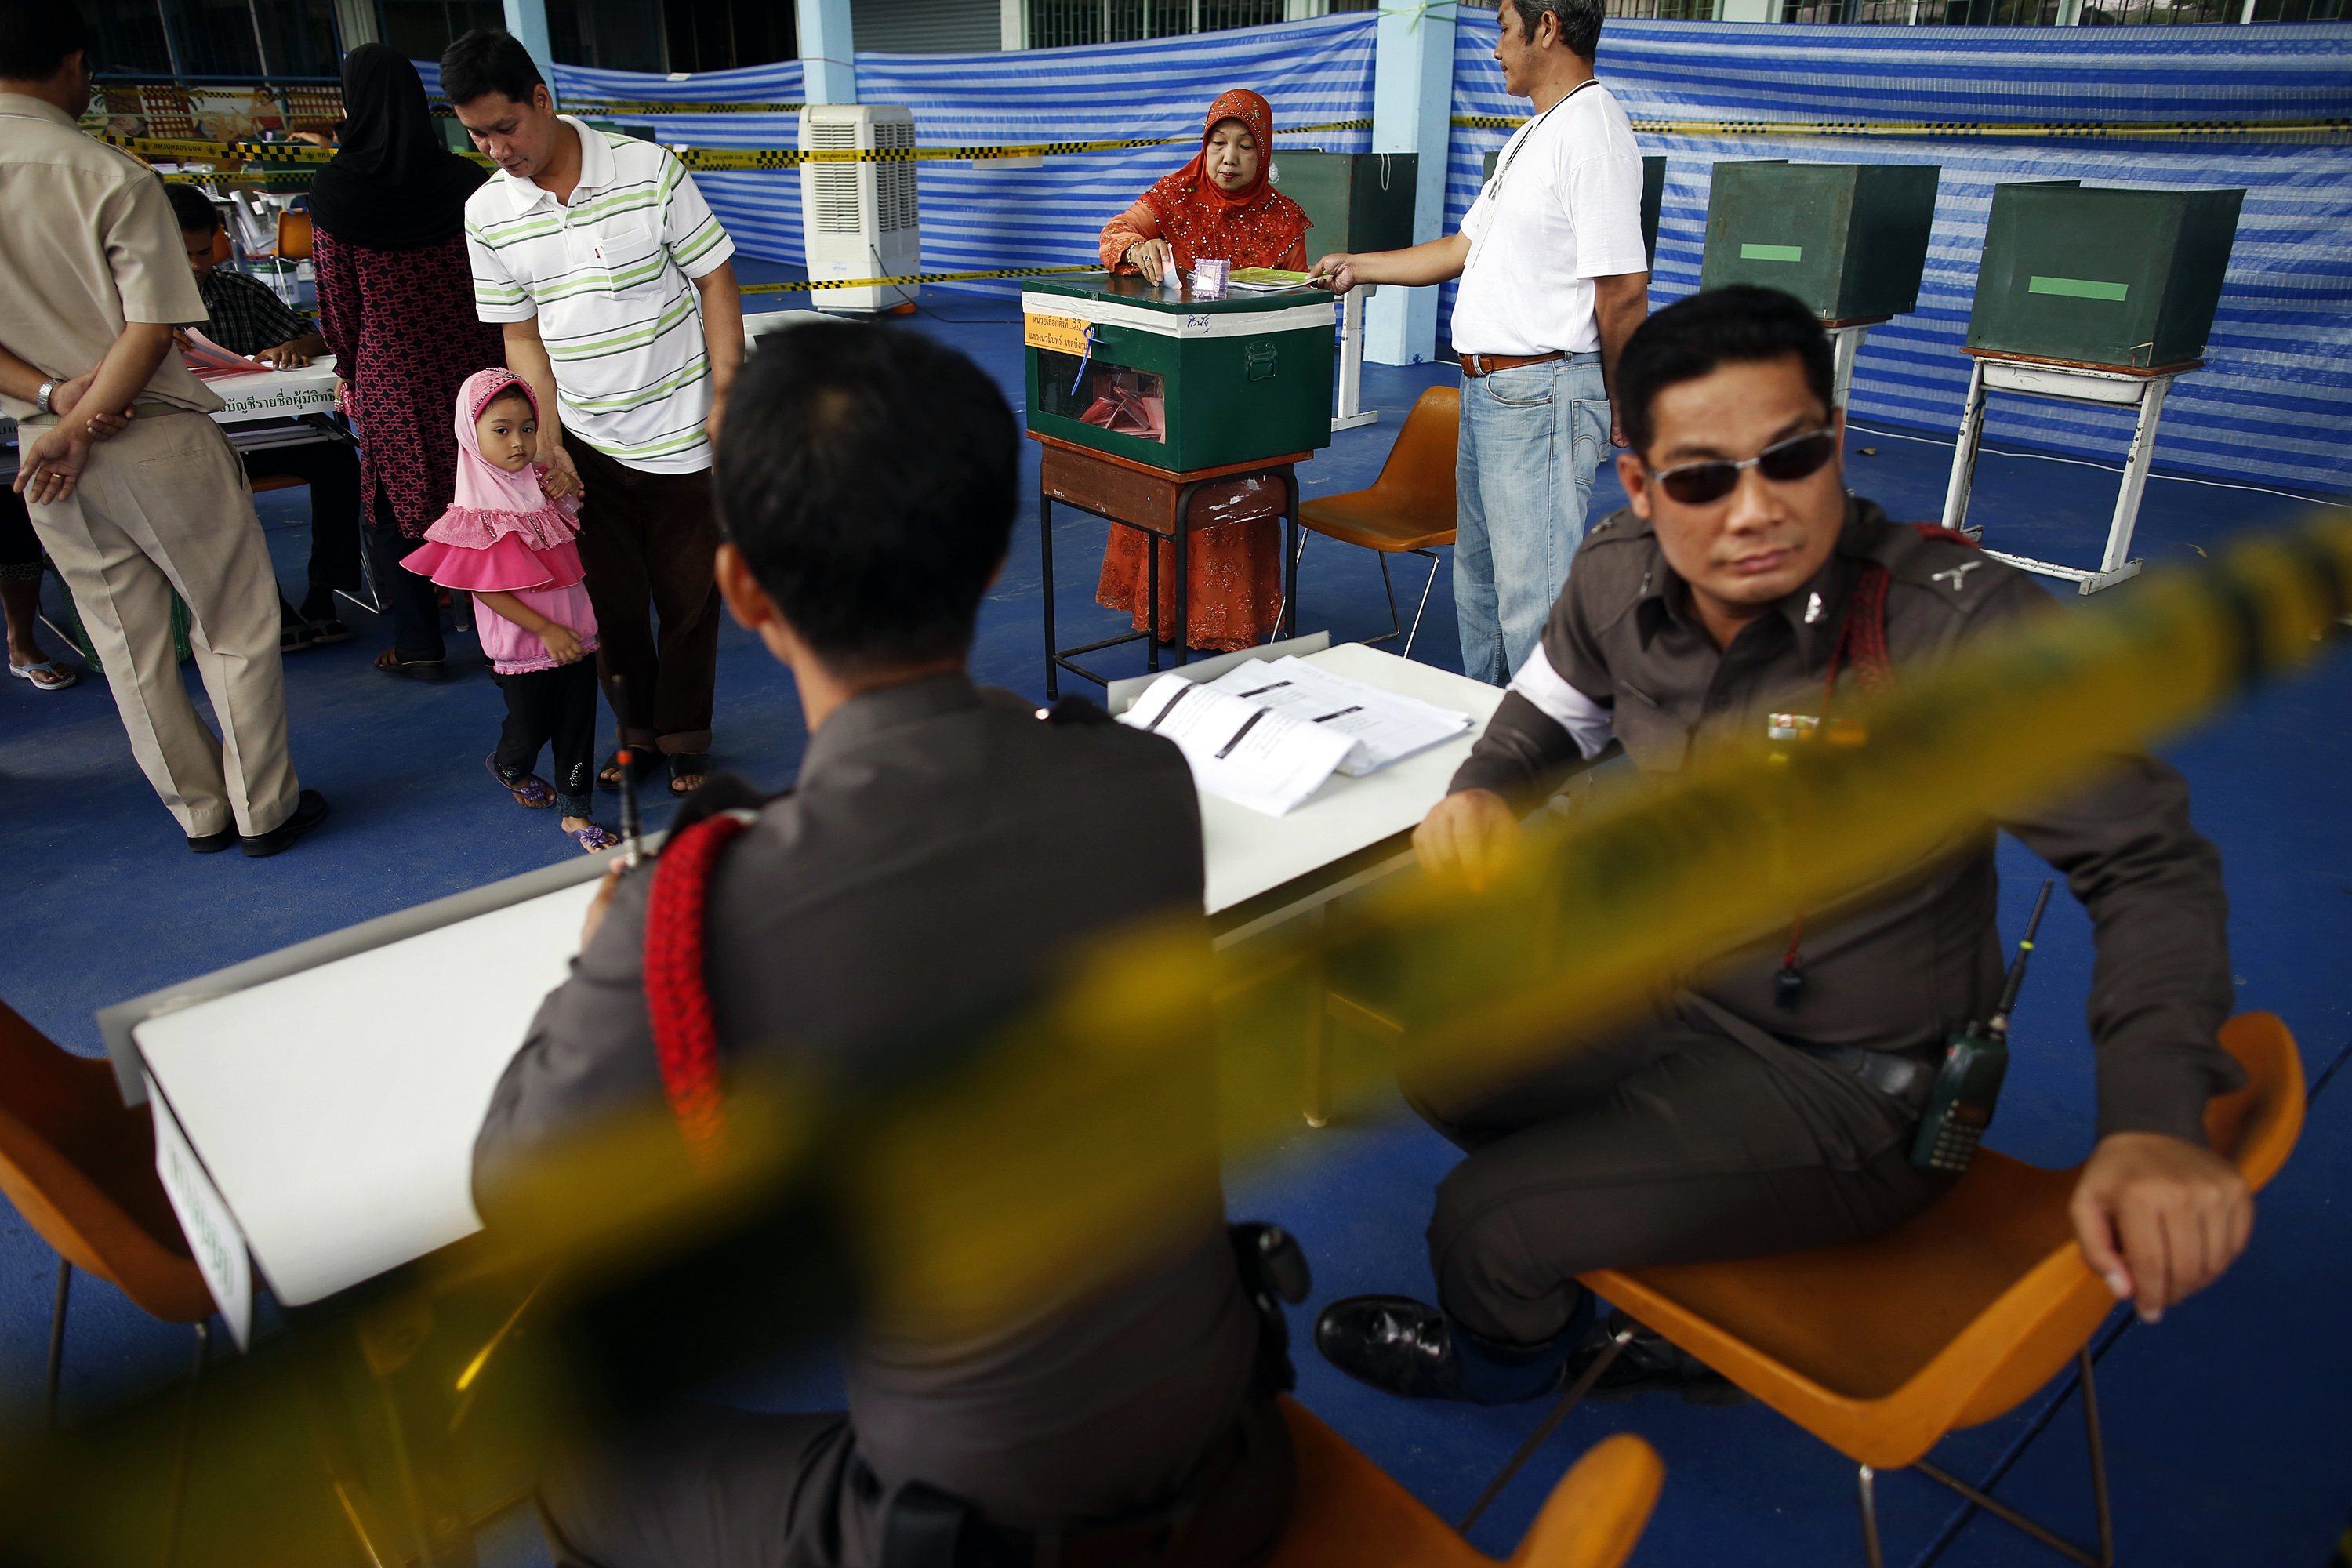 Κρίσιμες εκλογές στην Ταϊλάνδη